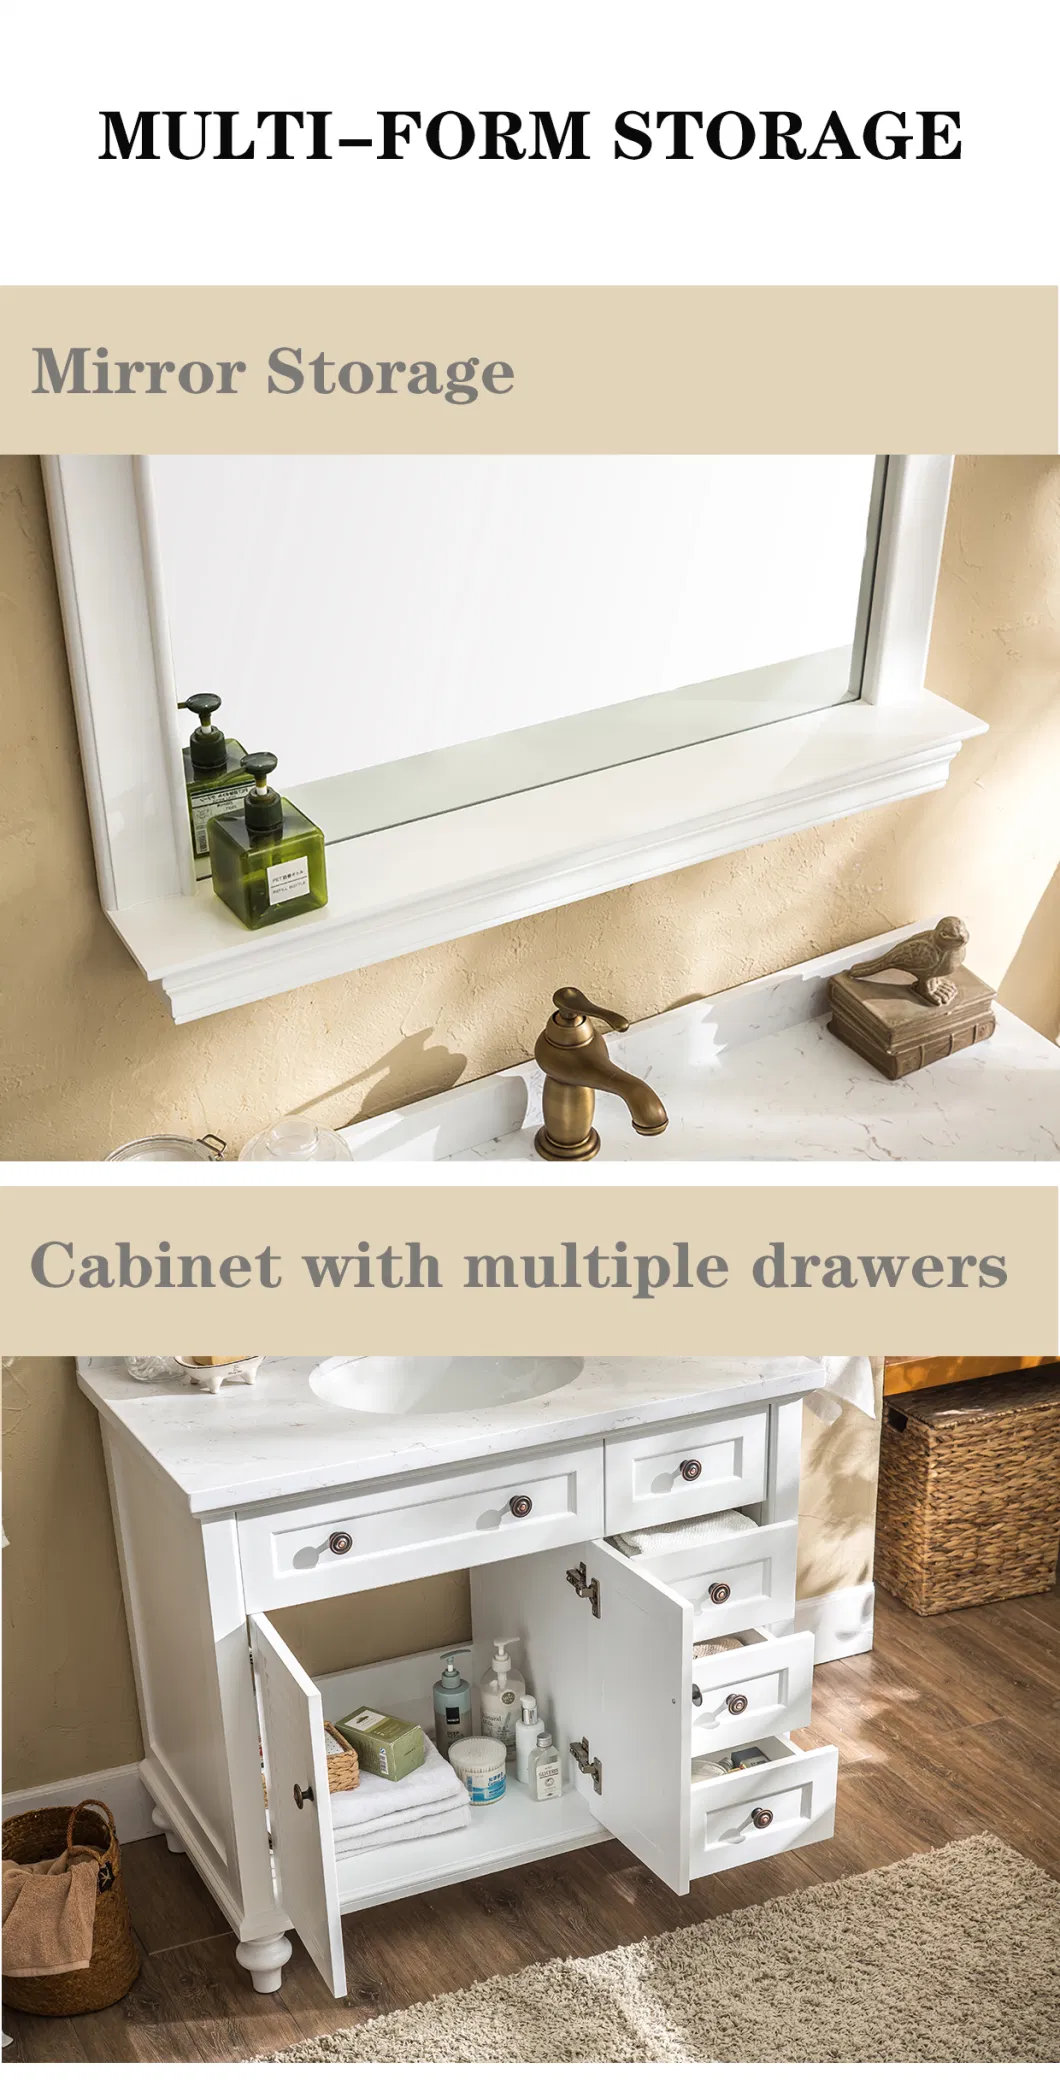 American Style Classical Bathroom Vanity Drawers Bathroom Furniture Set Luxury Basin Vanity Sink Bathroom Cabinet with Mirror